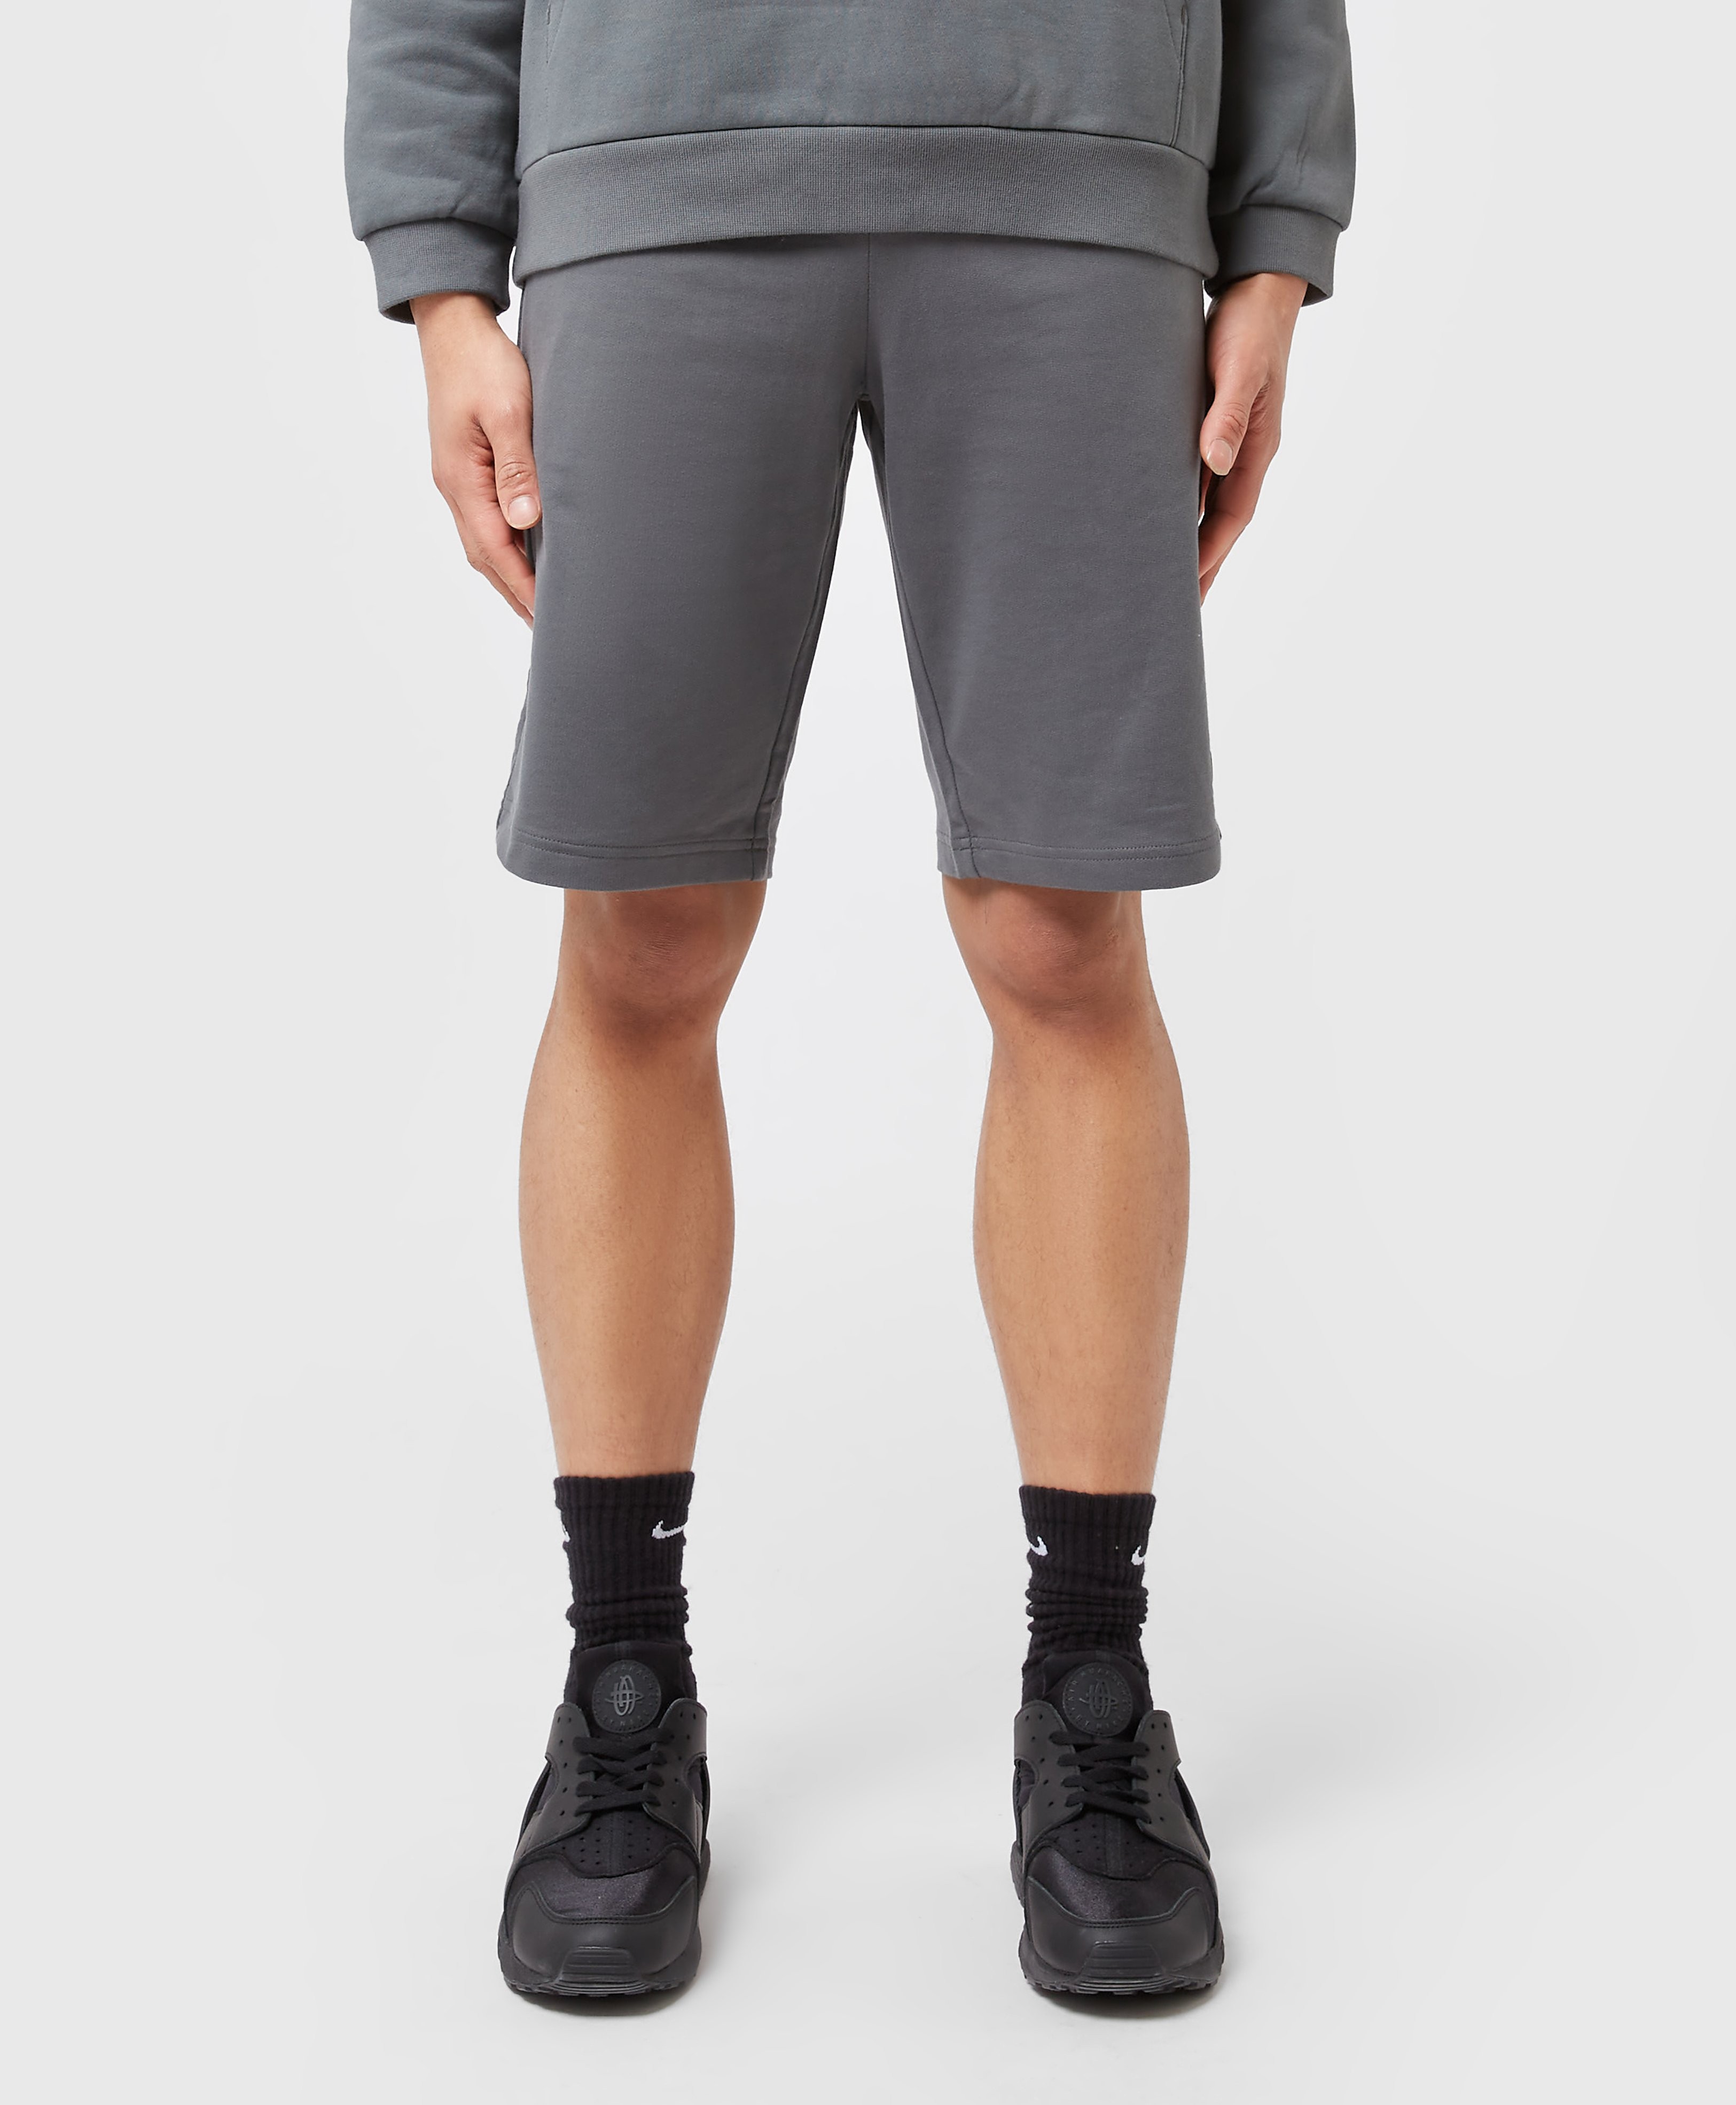 Men's Emporio Armani EA7 Core Shorts - Grey, Grey product